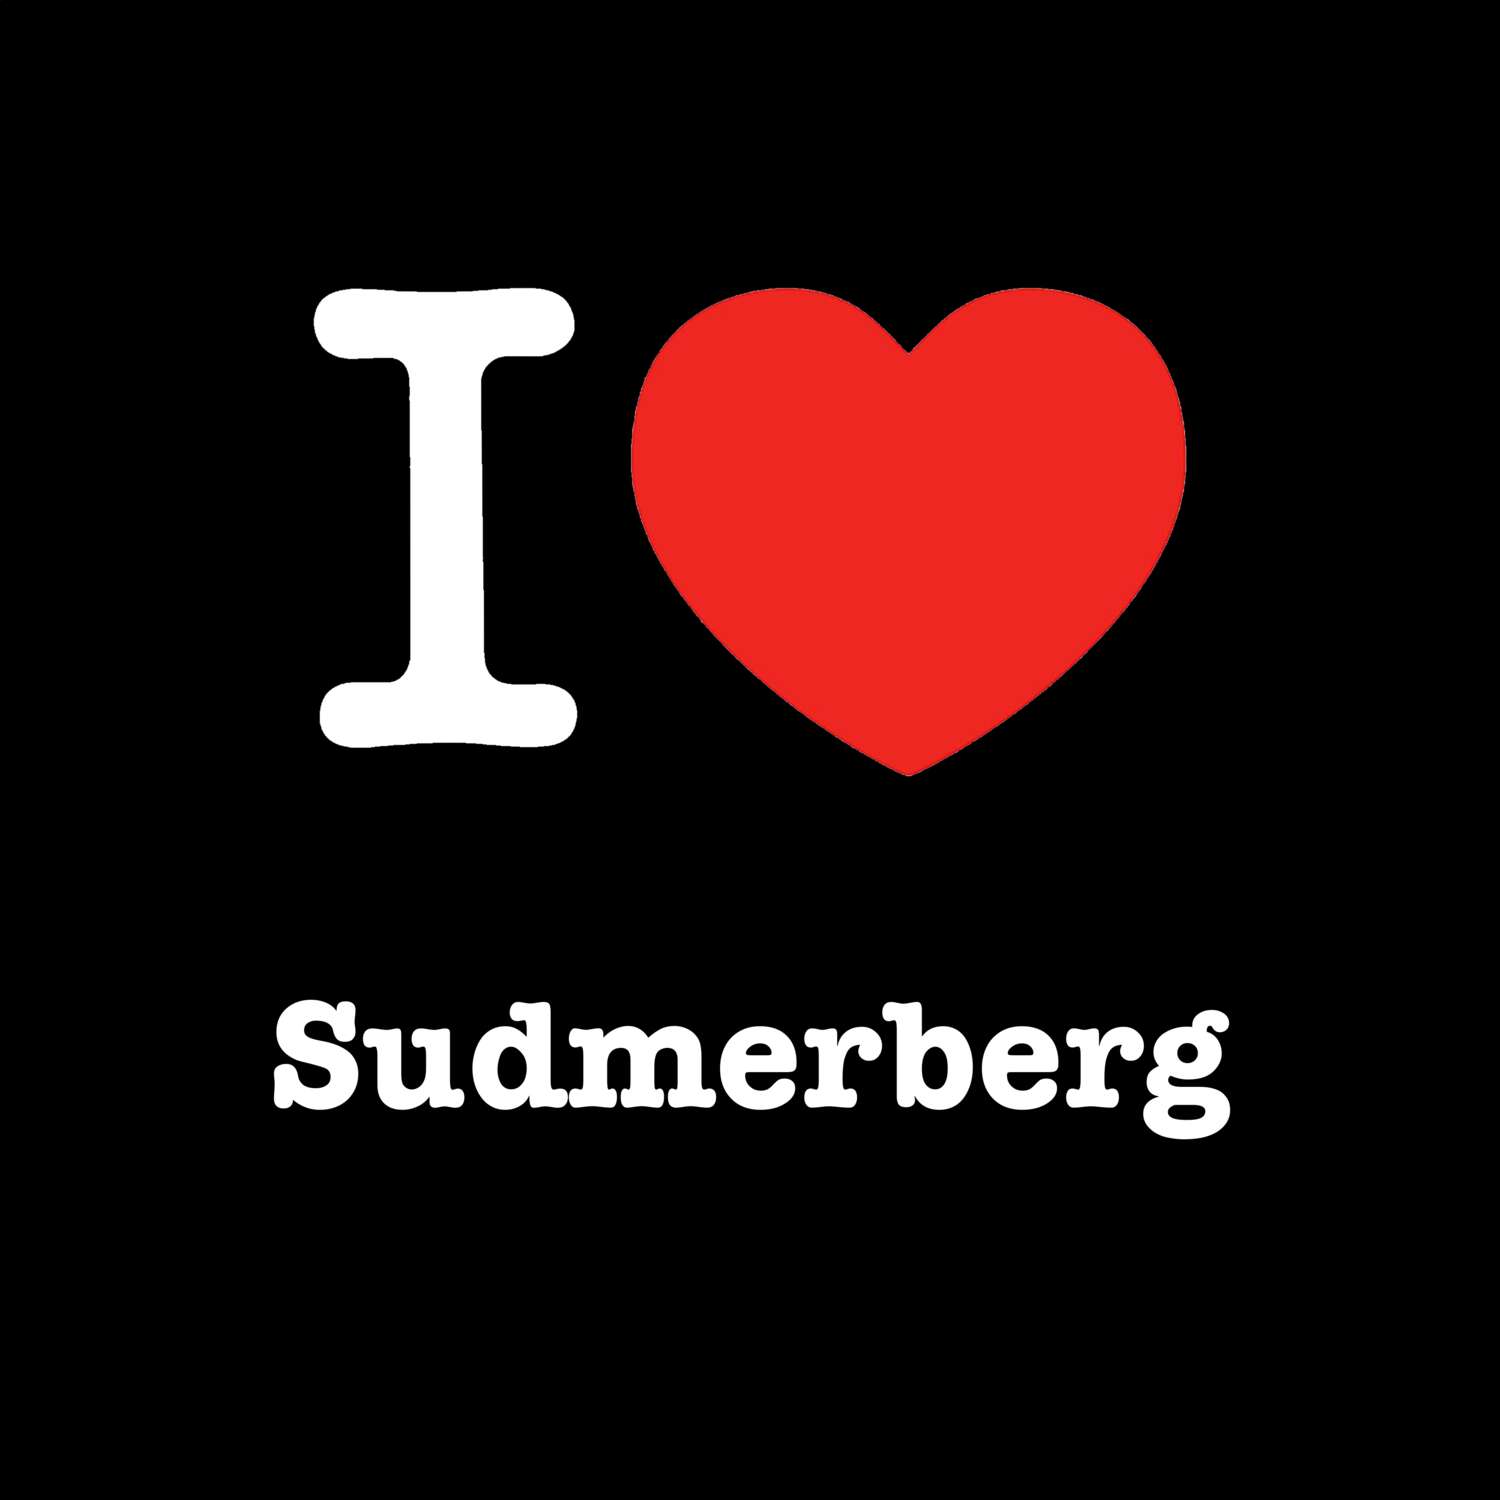 Sudmerberg T-Shirt »I love«